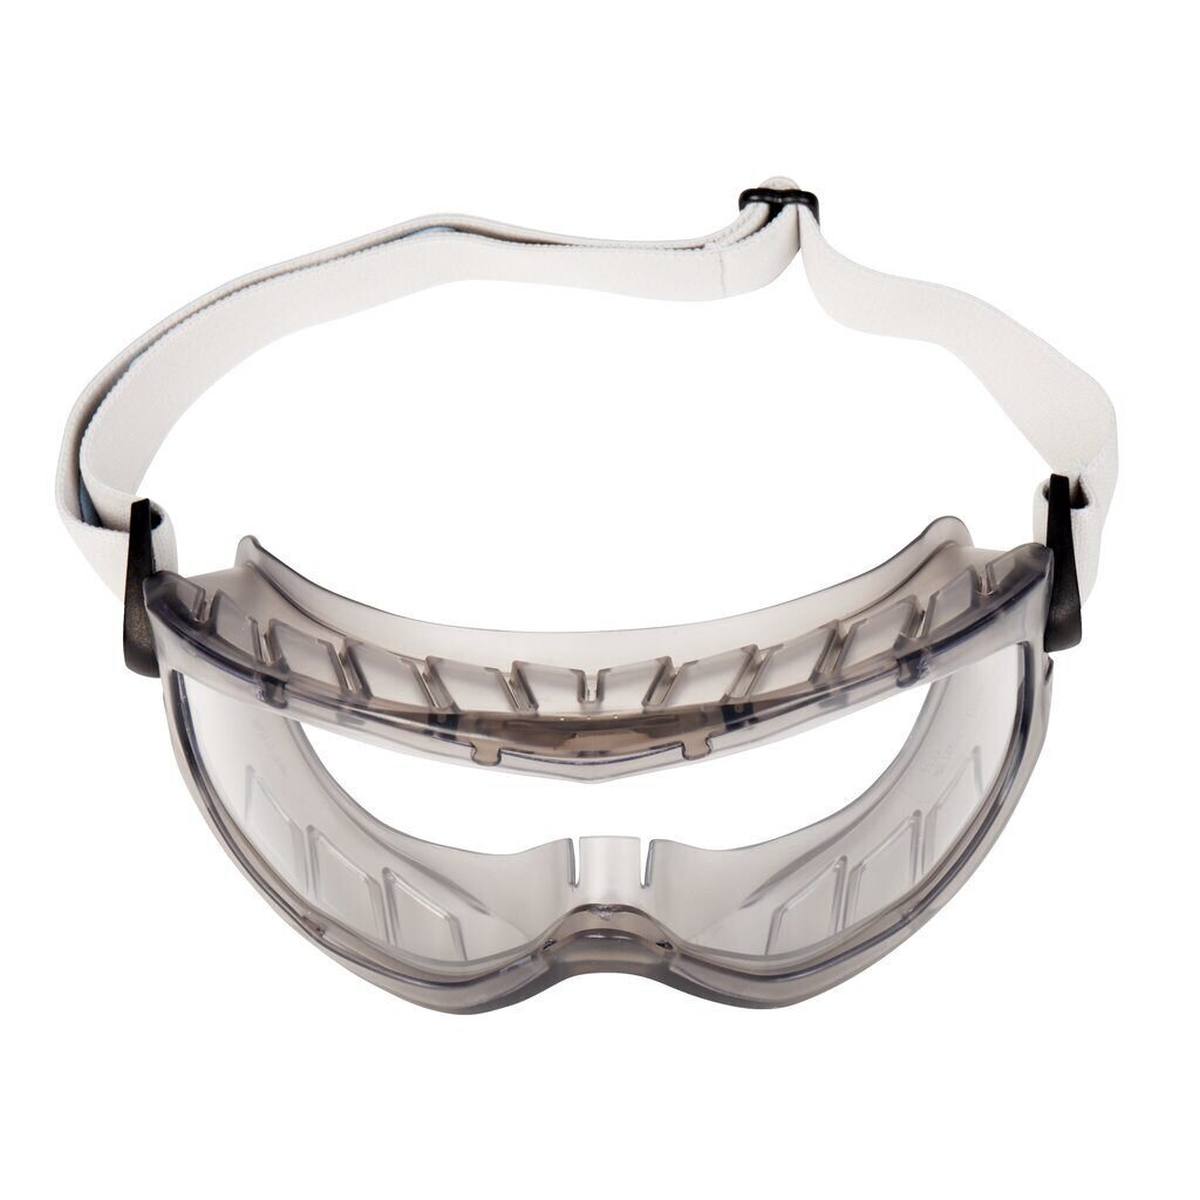 3M 2890A Vollsichtbrille, Acetat Beschichtung, AS/AF/UV, PC, mit Belüftungsschlitz, verstellbare Gelenke